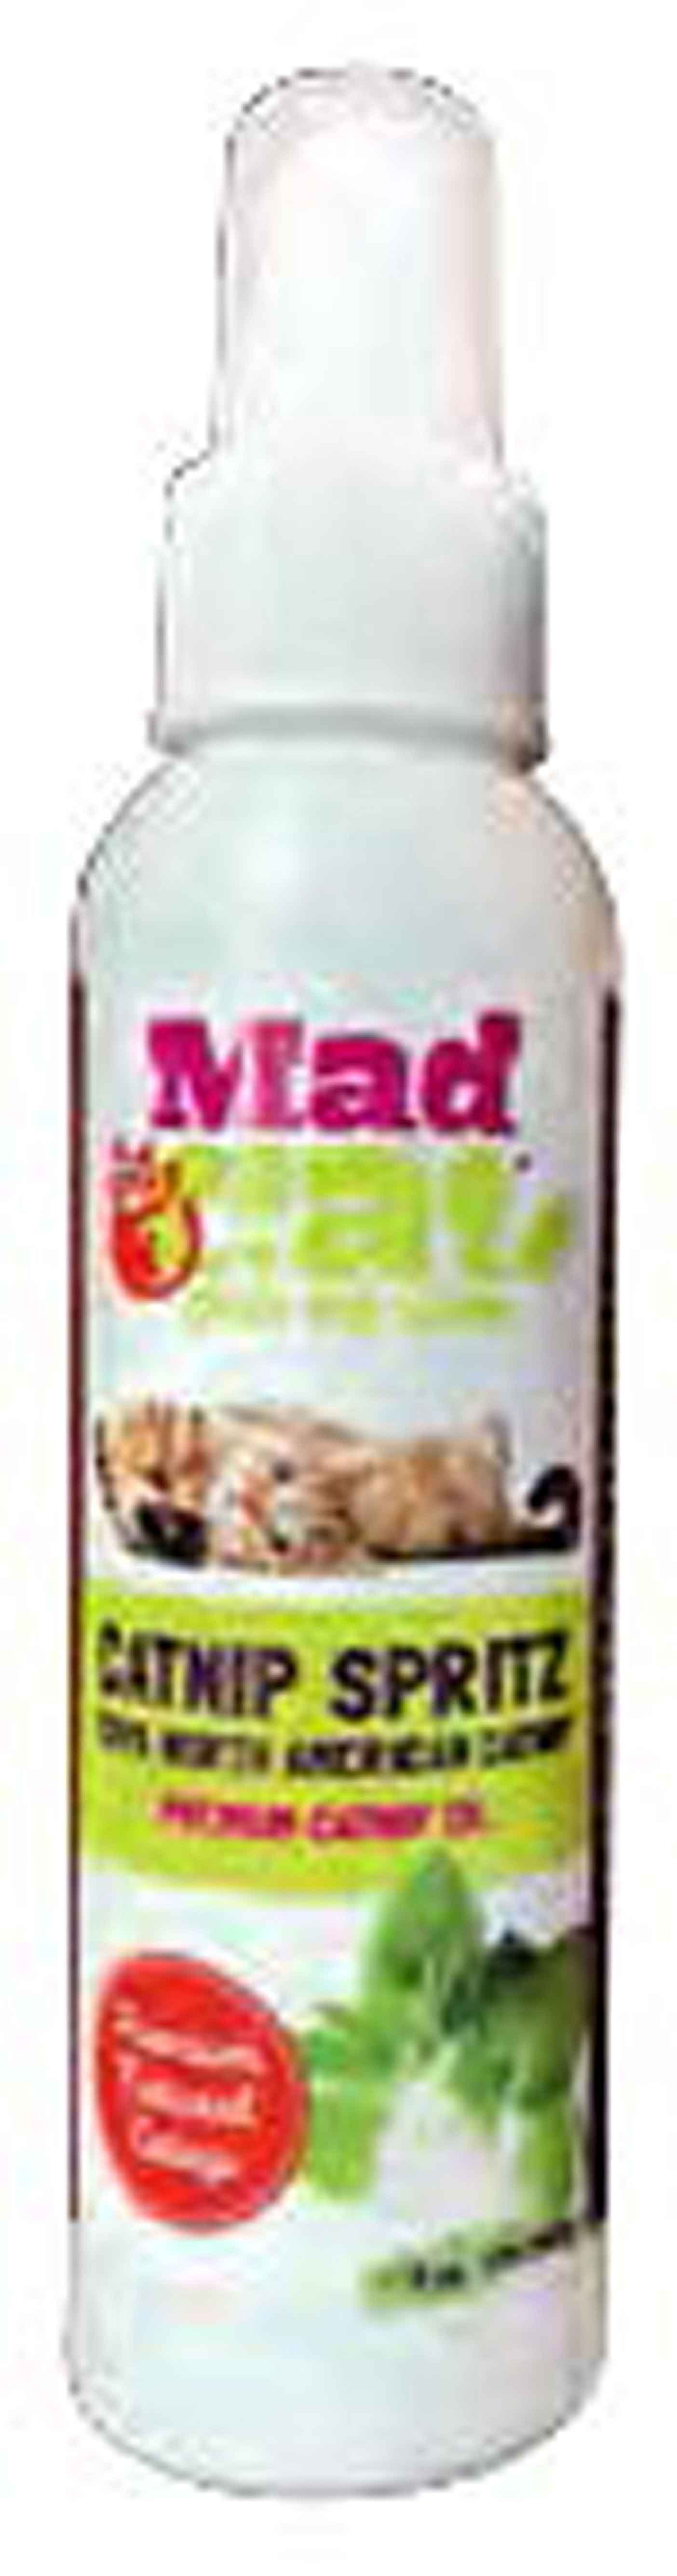 Madcat Cat Toy Catnip Spray 2oz